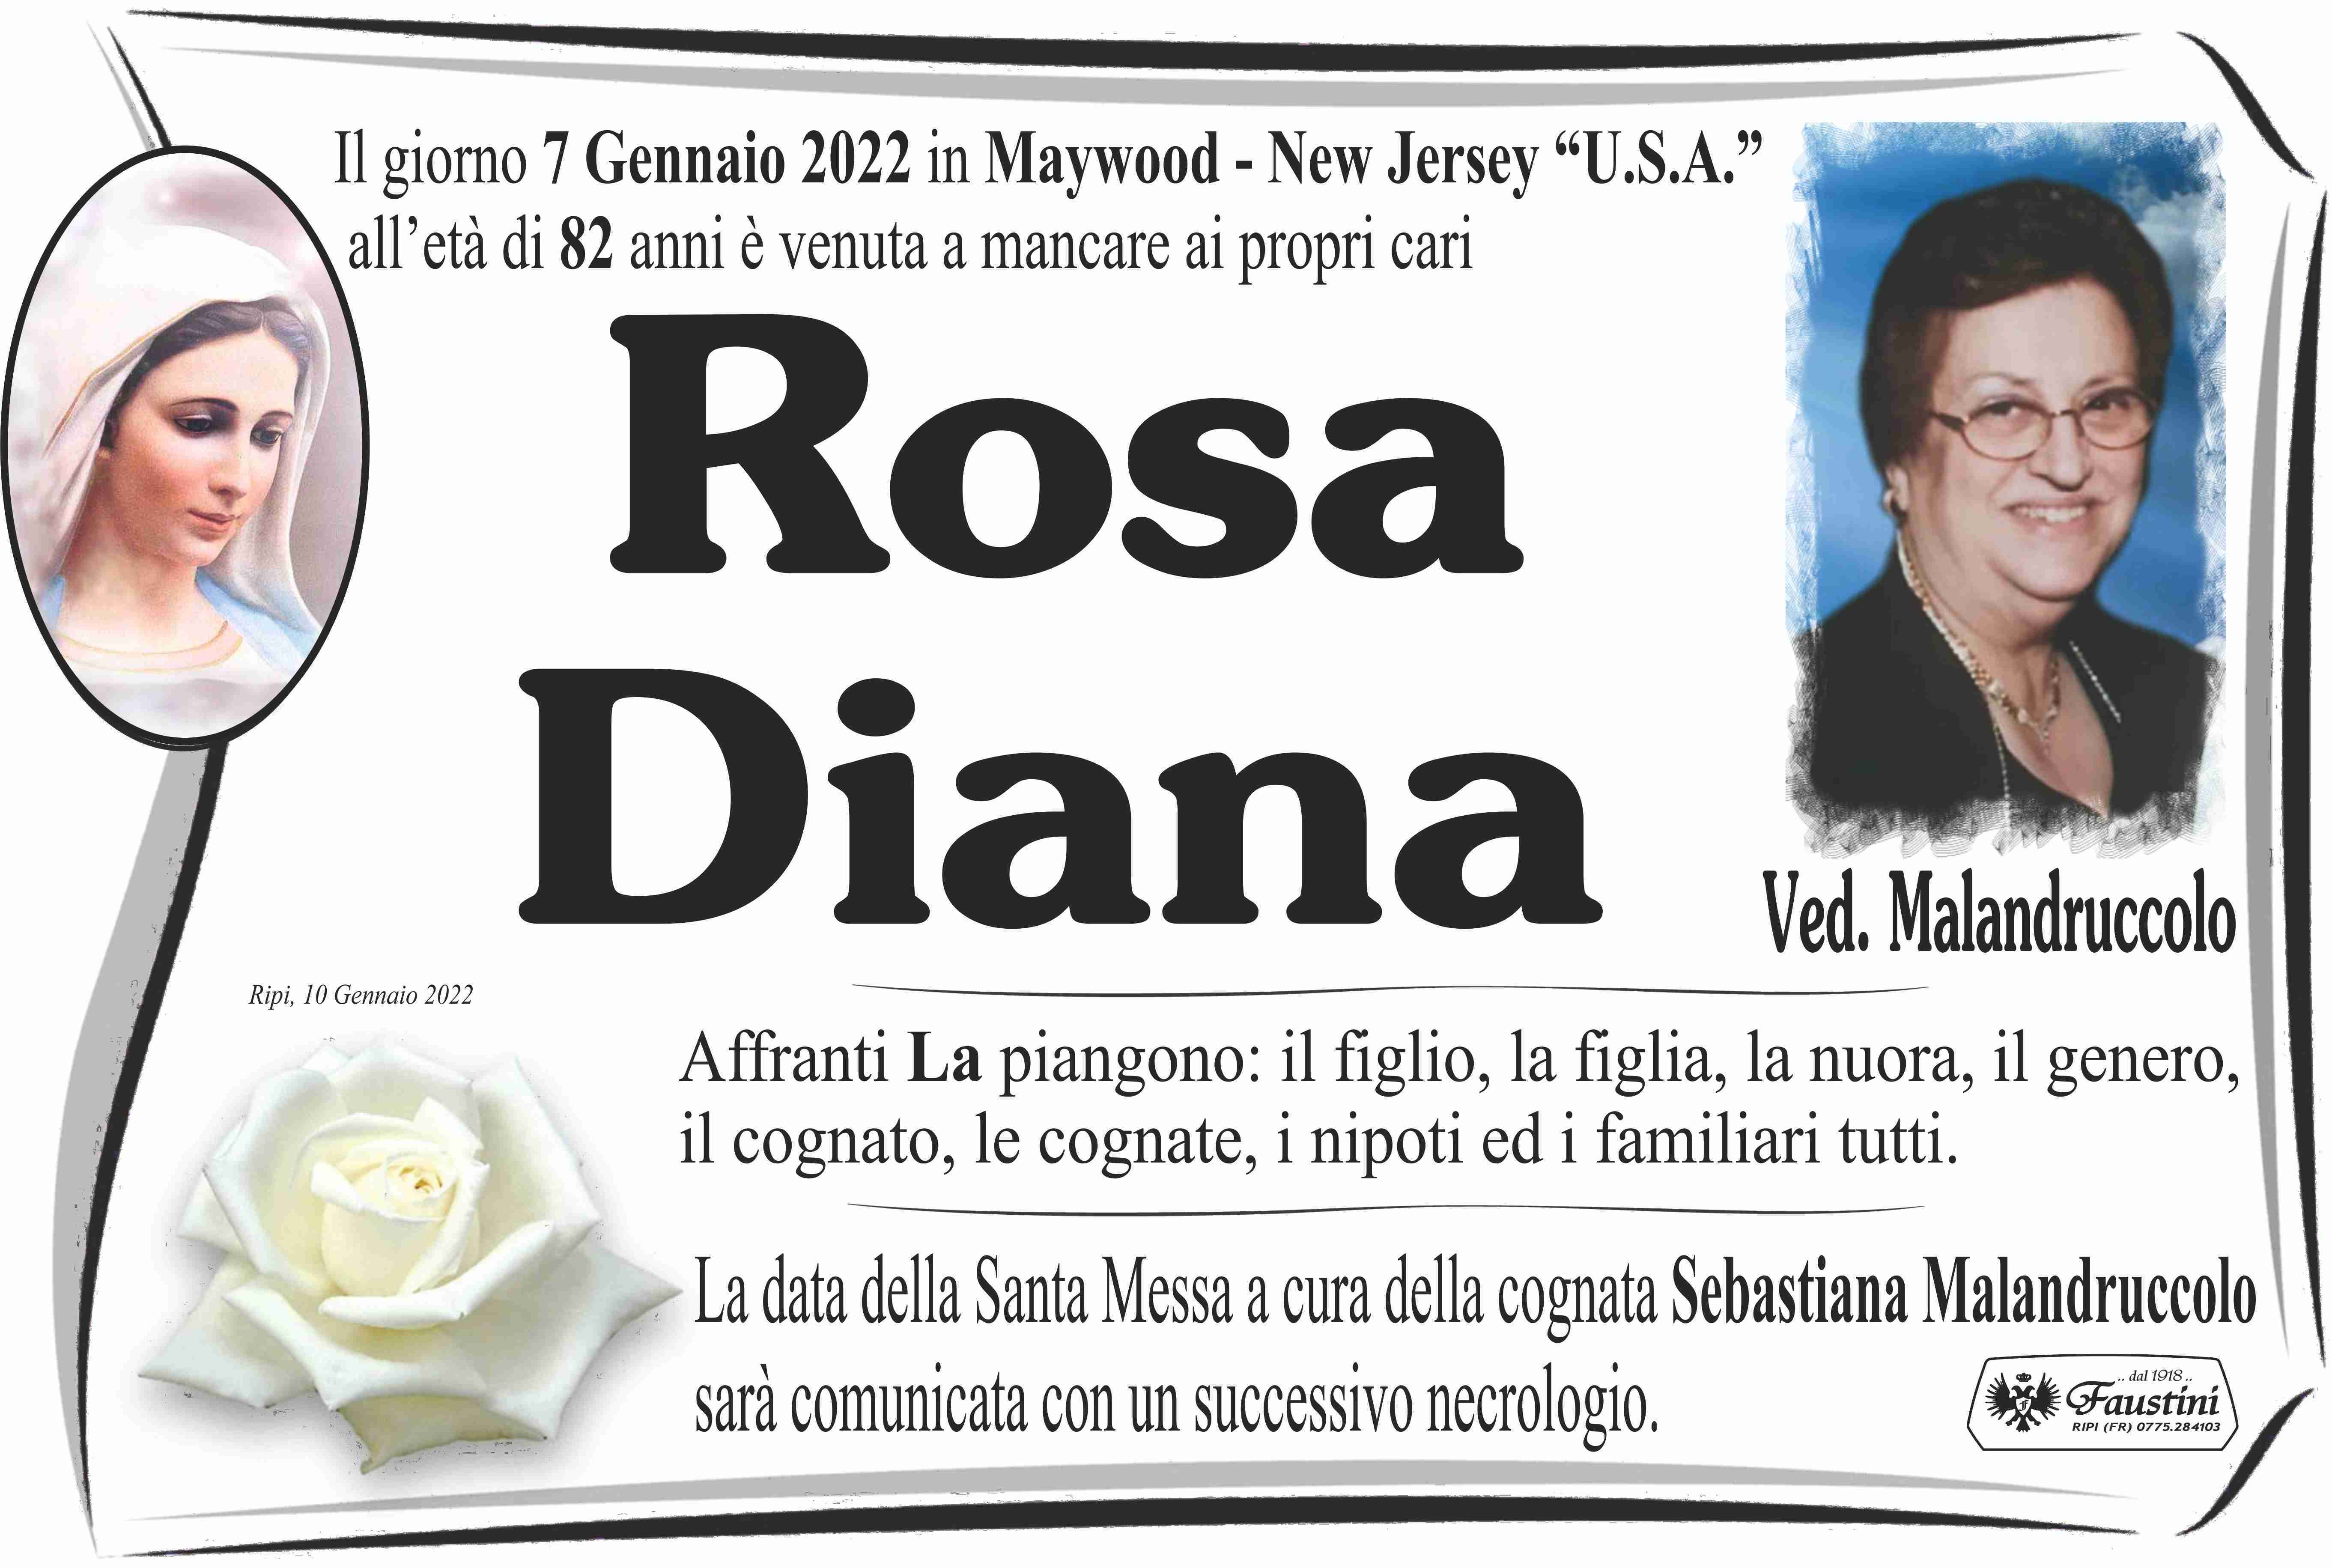 Rosa Diana